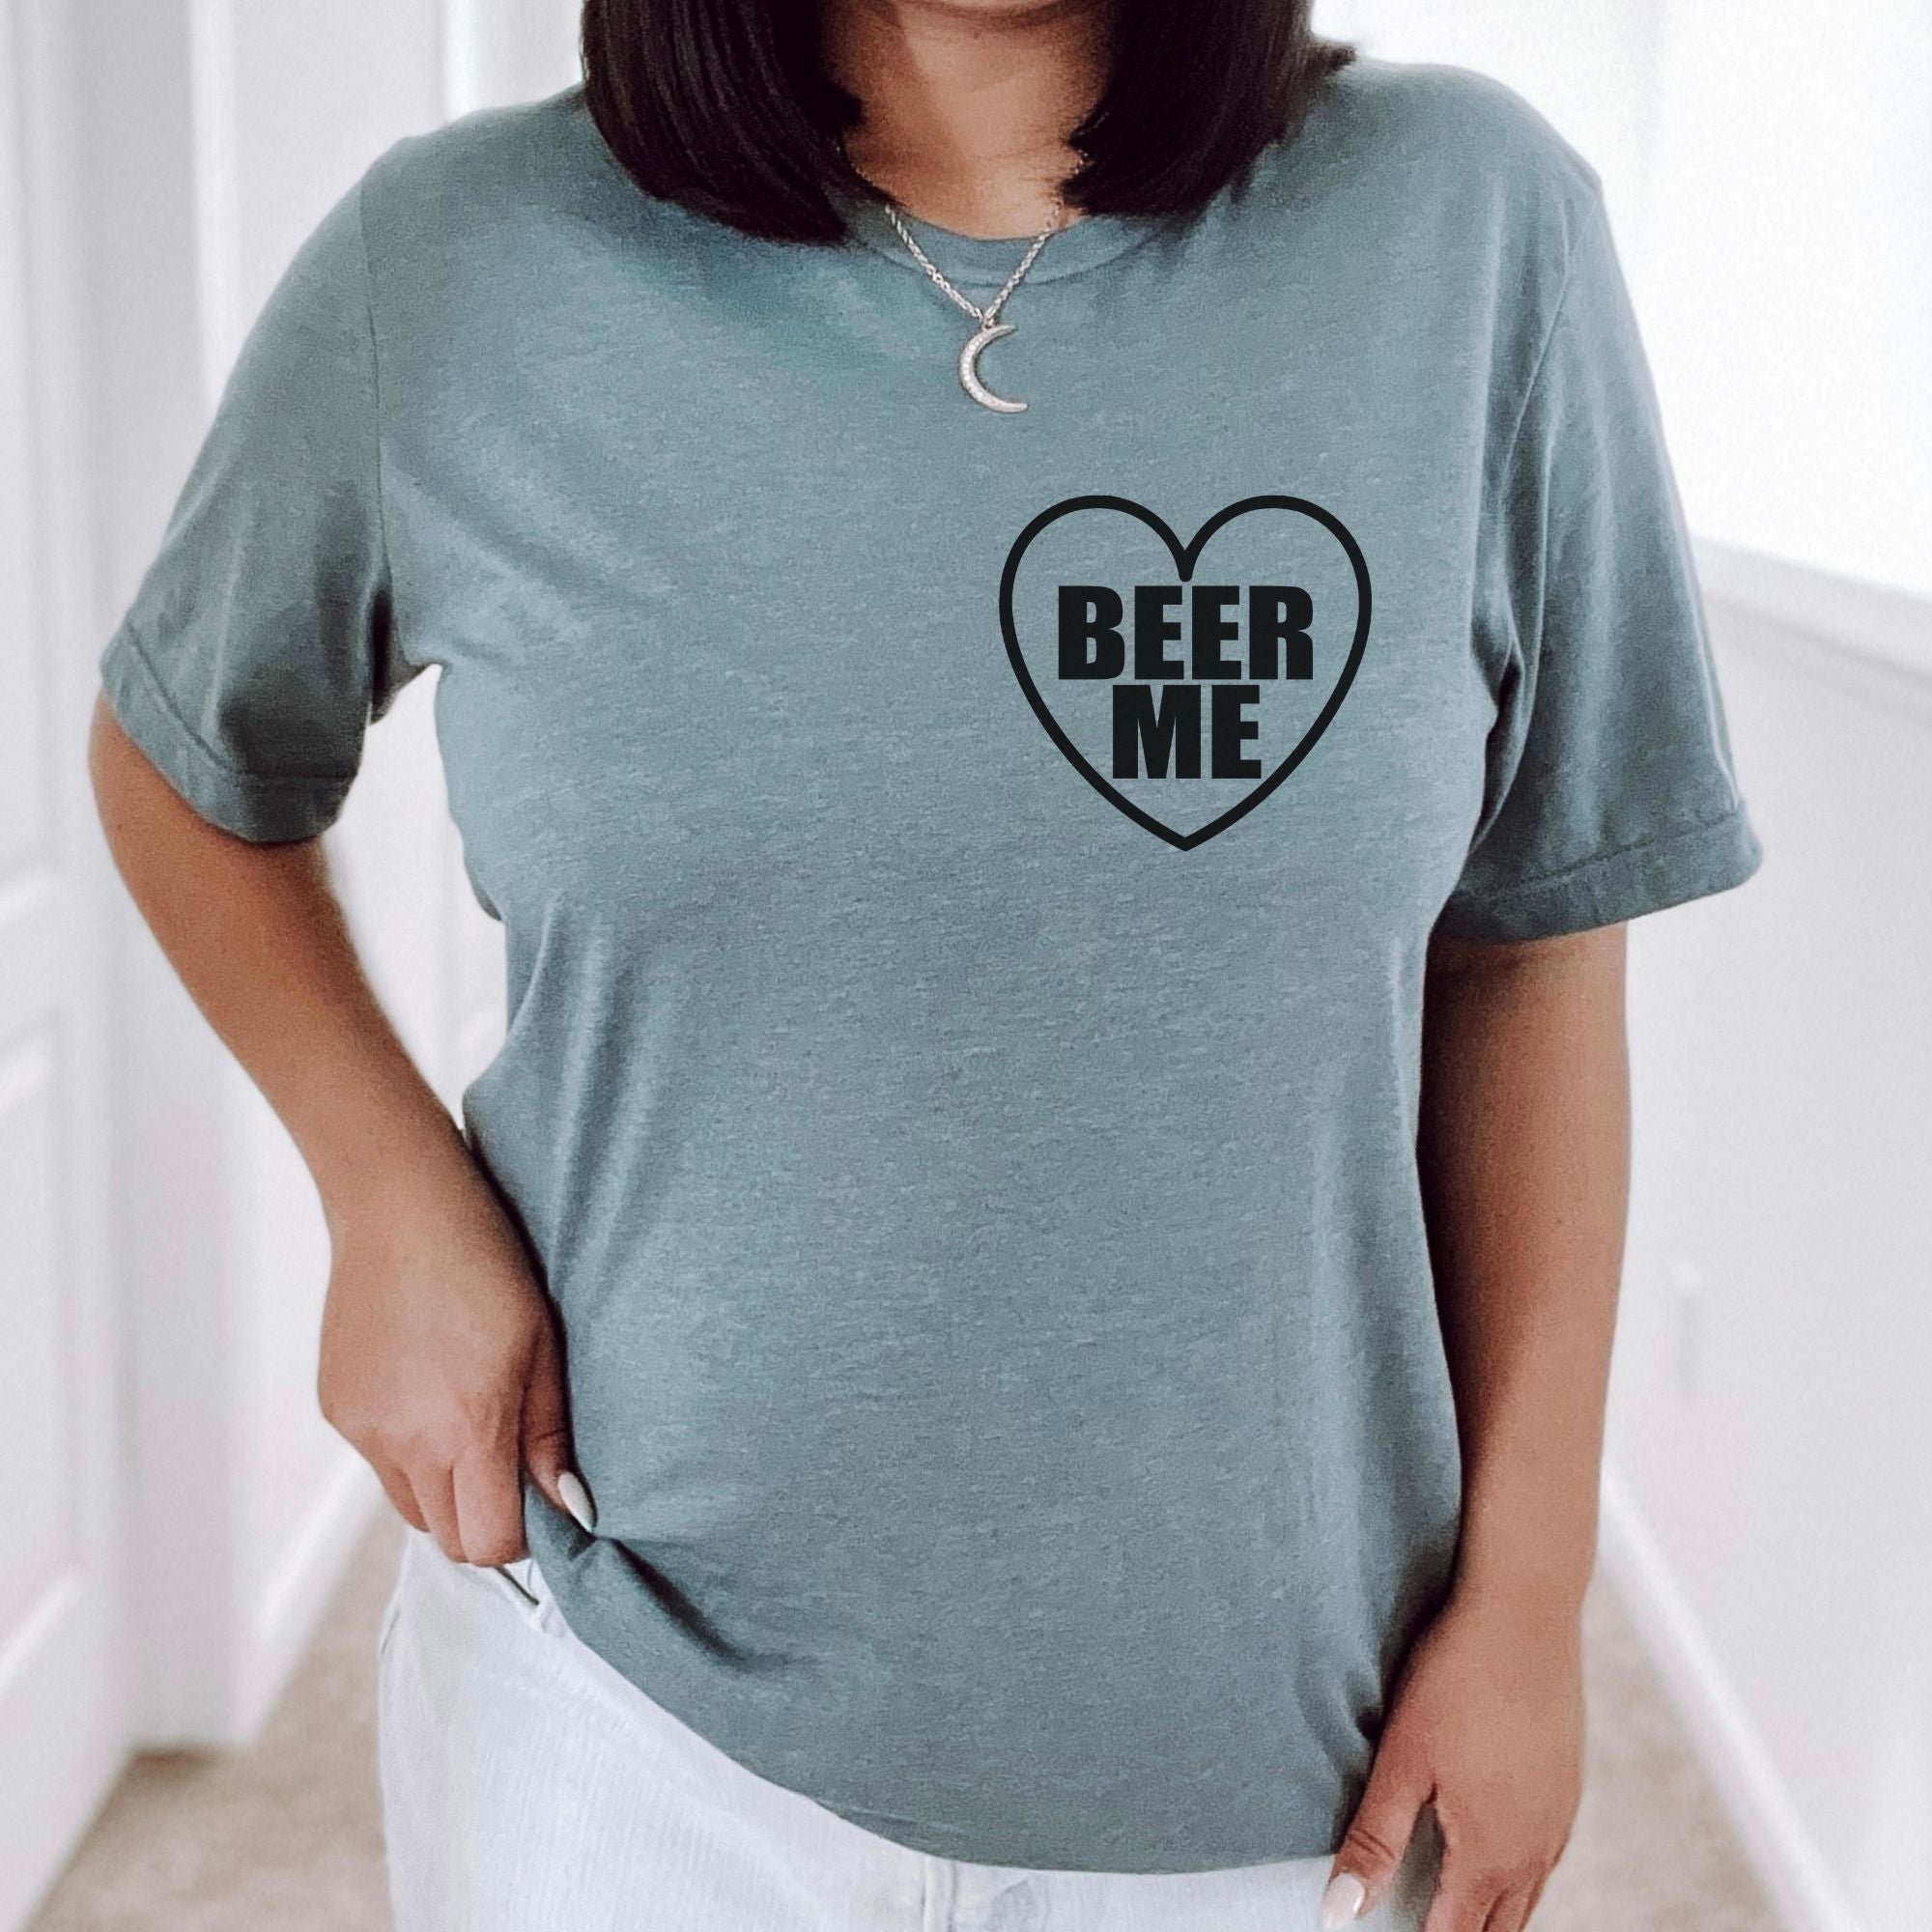 Beer Me Shirt, Beer Shirts, Beer Drinking Woman, Beer Babe, Cute Graphic Tees Woman, Womens Shirt, Cute Shirt for Women, Graphic Tee *UNISEX FIT*-208 Tees Wholesale, Idaho